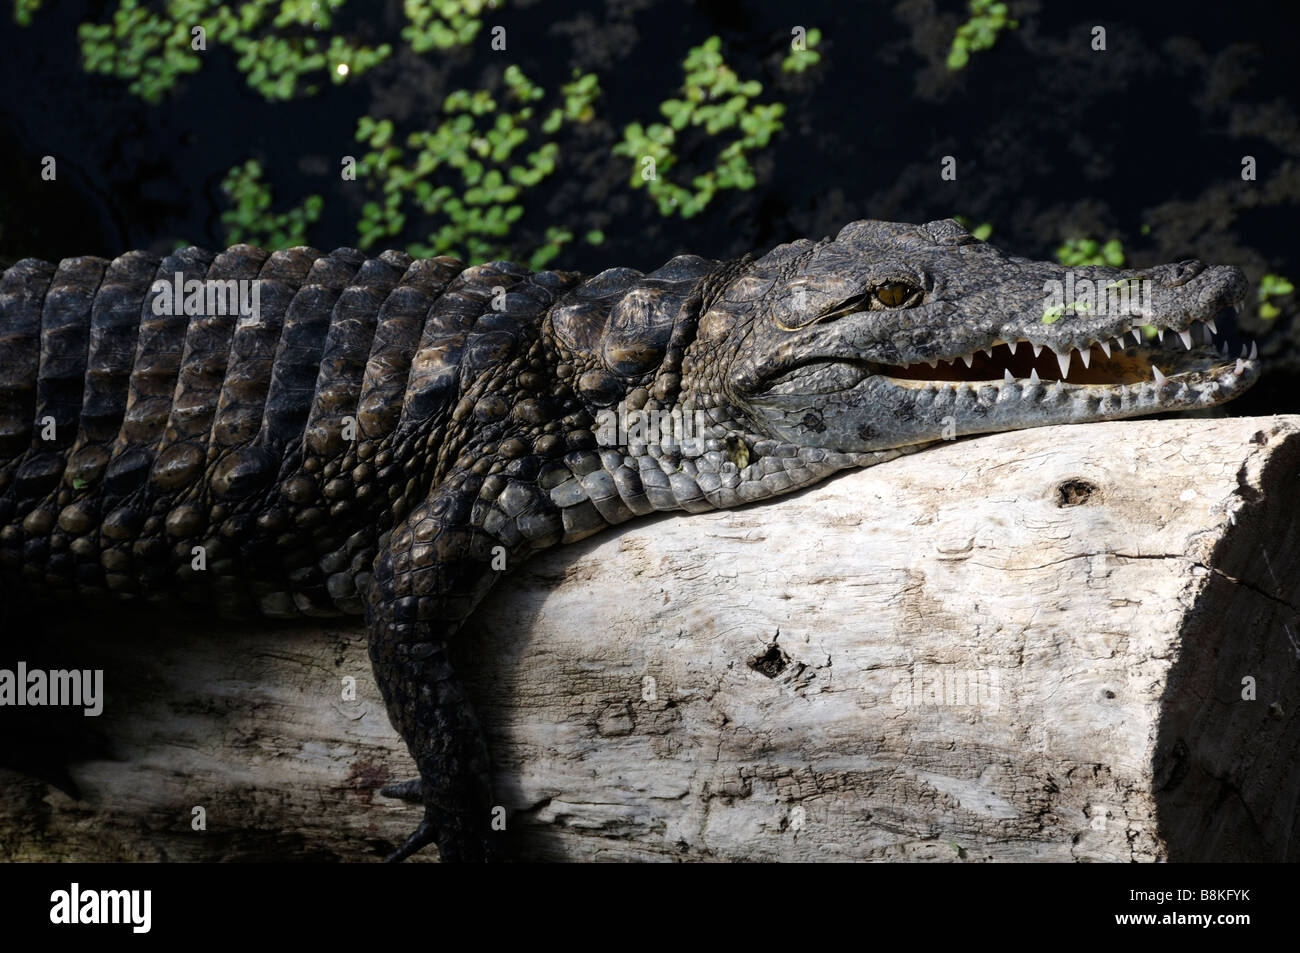 Stock photo of Nile crocodile in la planete des crocodiles centre at Civaux in France Stock Photo